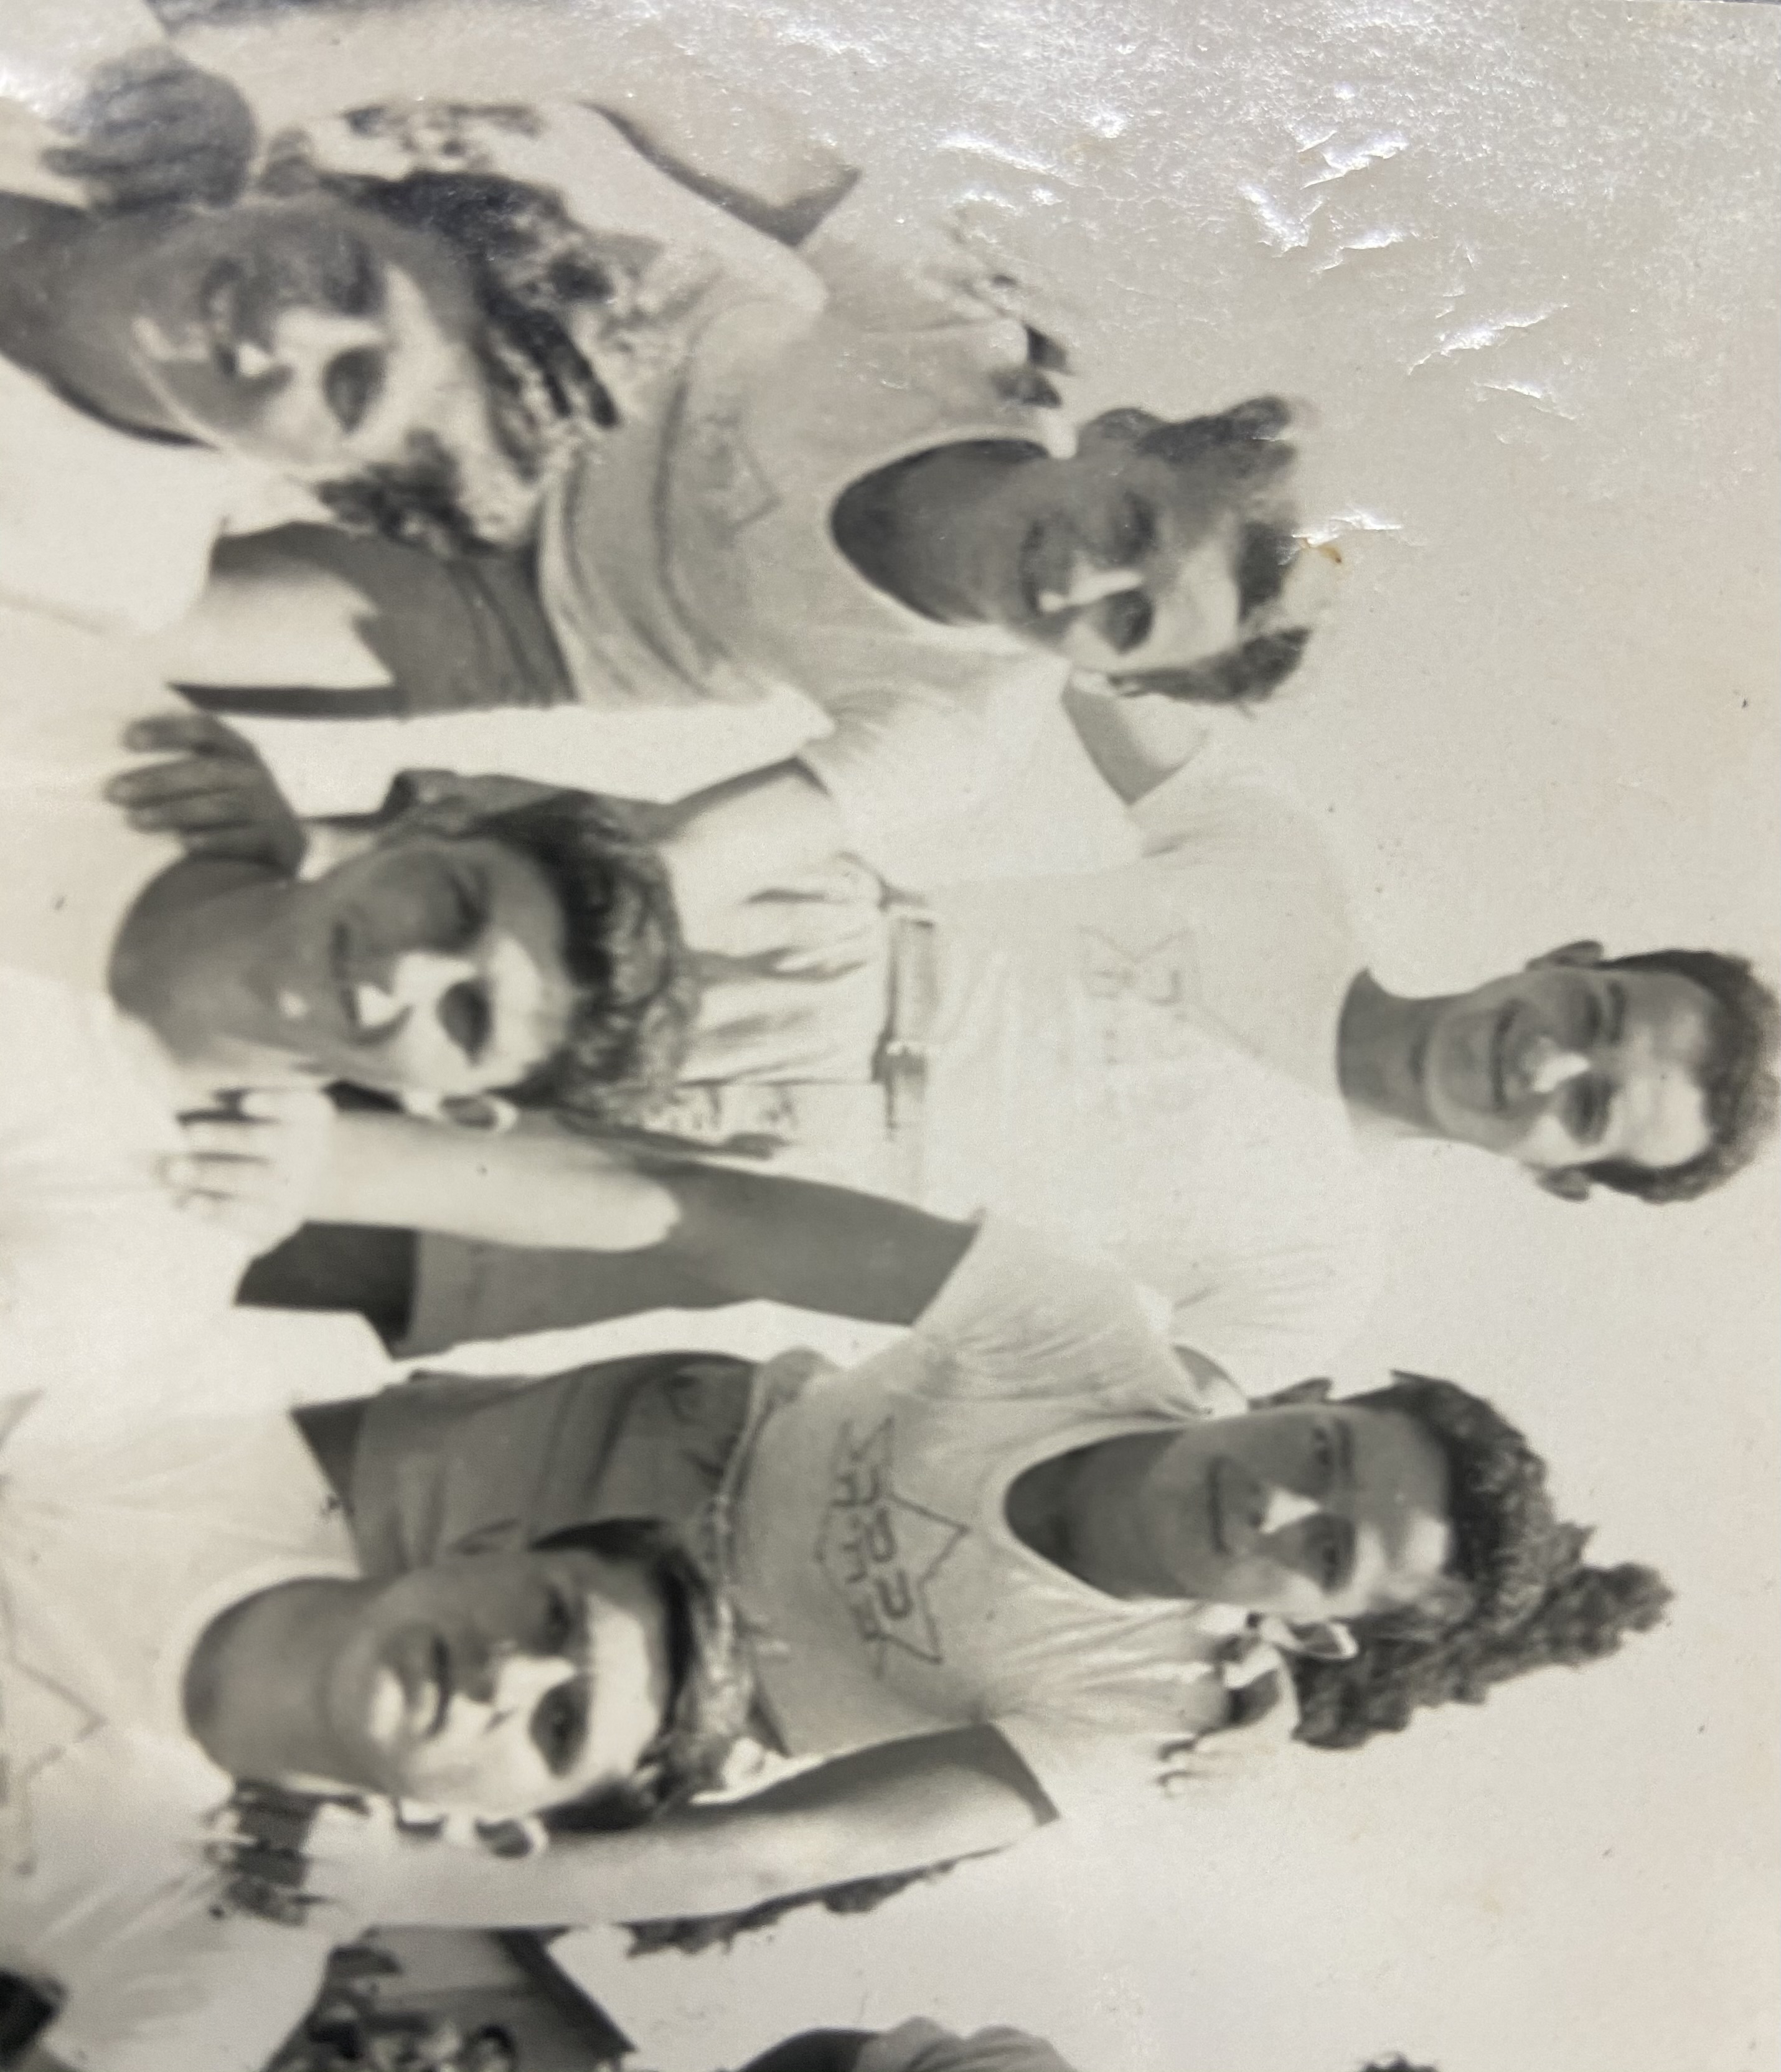 Motke mit der Fußballmannschaft seiner Schule in Kfar Batya. Motke steht links in der ersten Reihe.